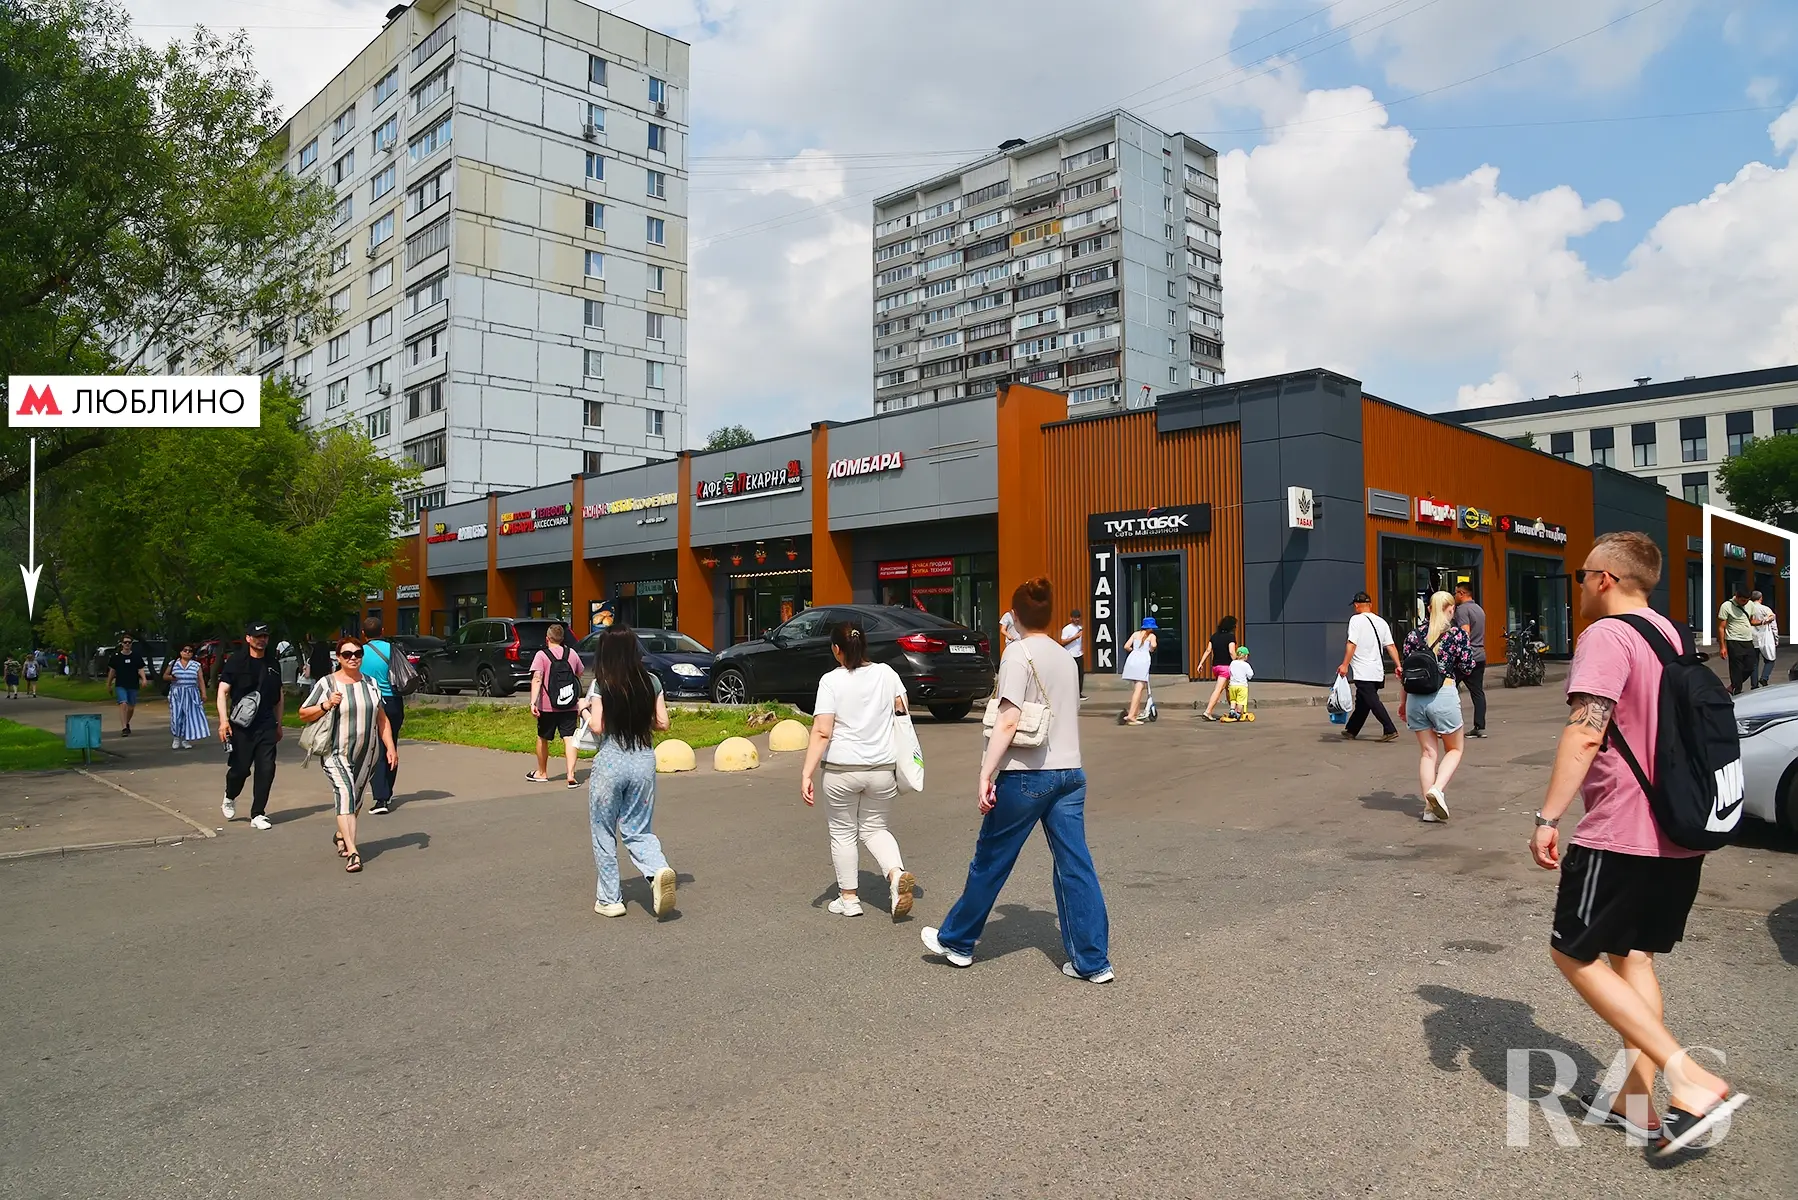 Продажа готового арендного бизнеса площадью 427.9 м2 в Москве: Краснодарская, 57к3 R4S | Realty4Sale